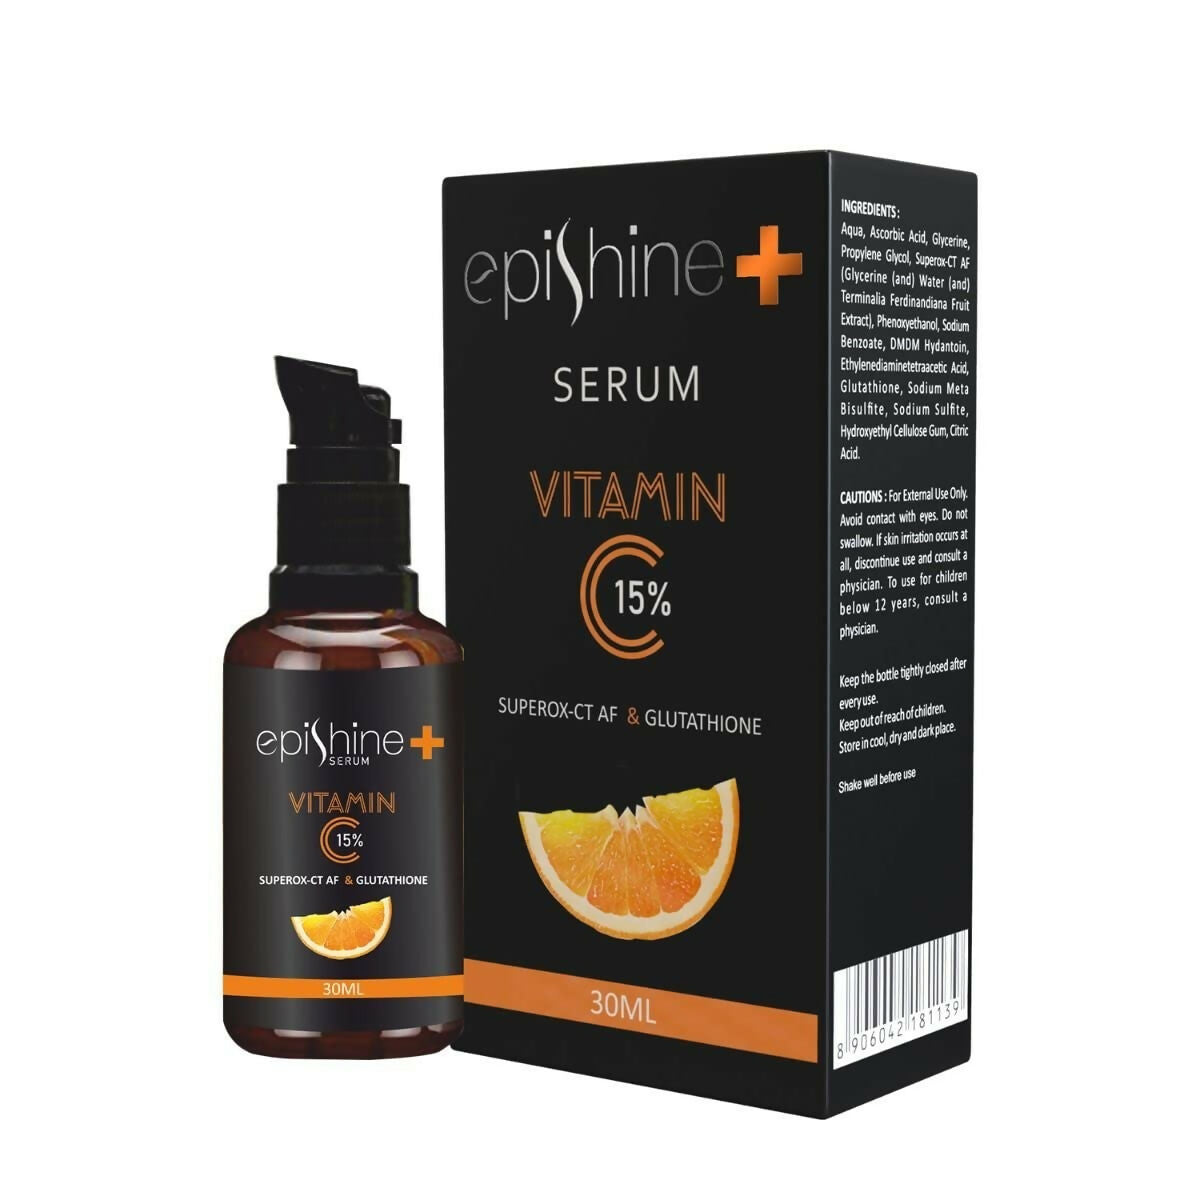 Epishine + Serum Vitamin C 15% - Distacart